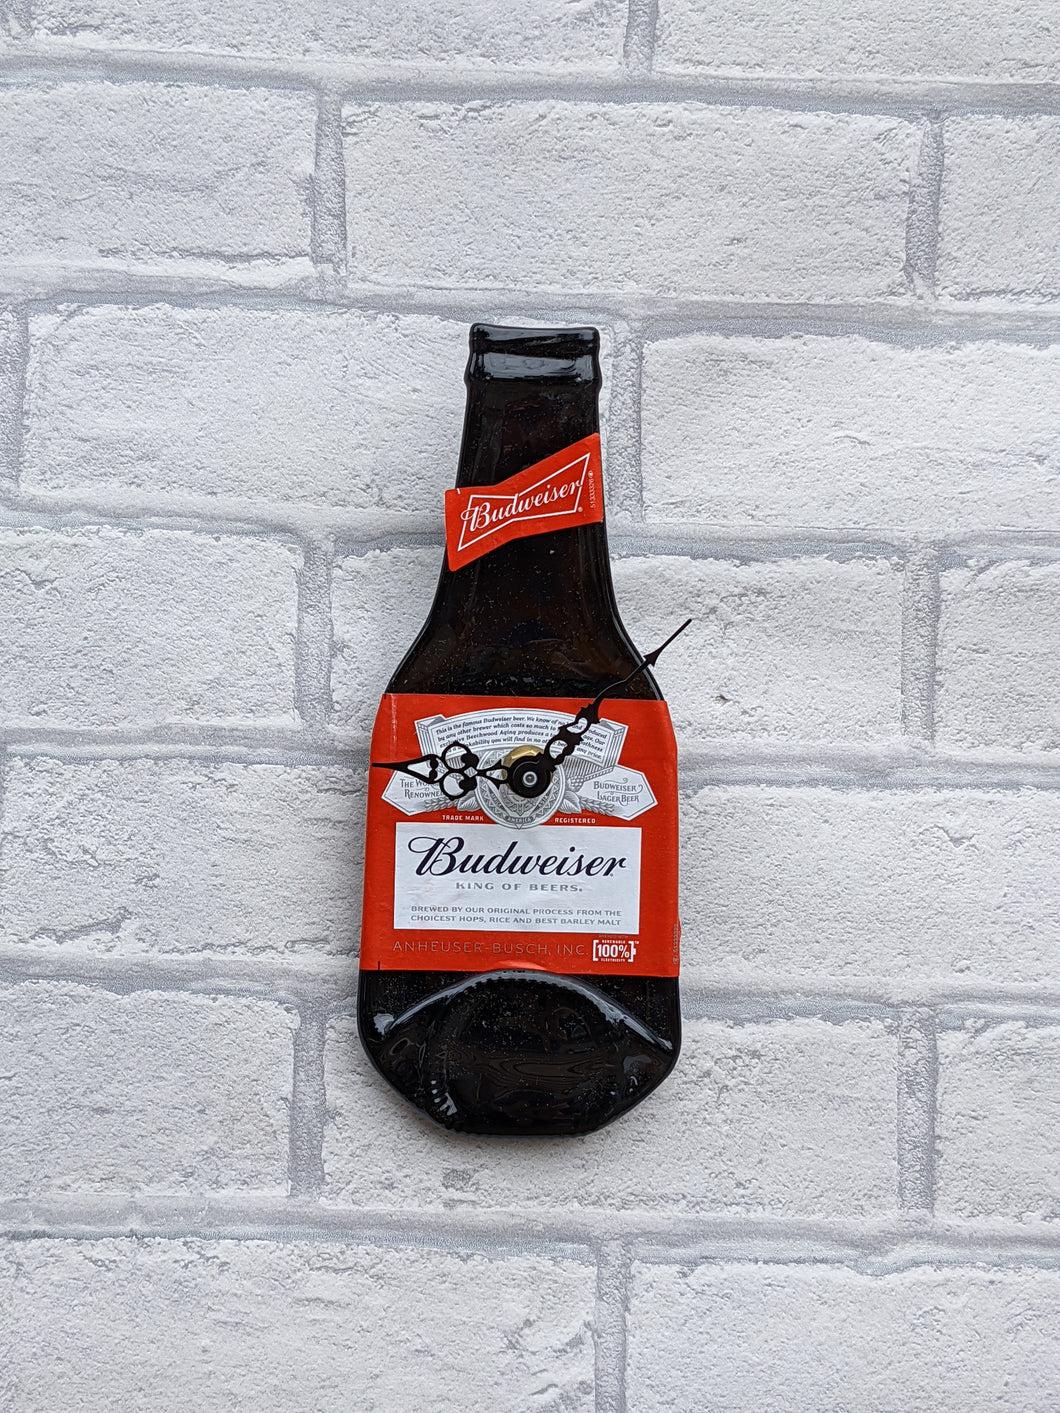 Budweiser bottle clock